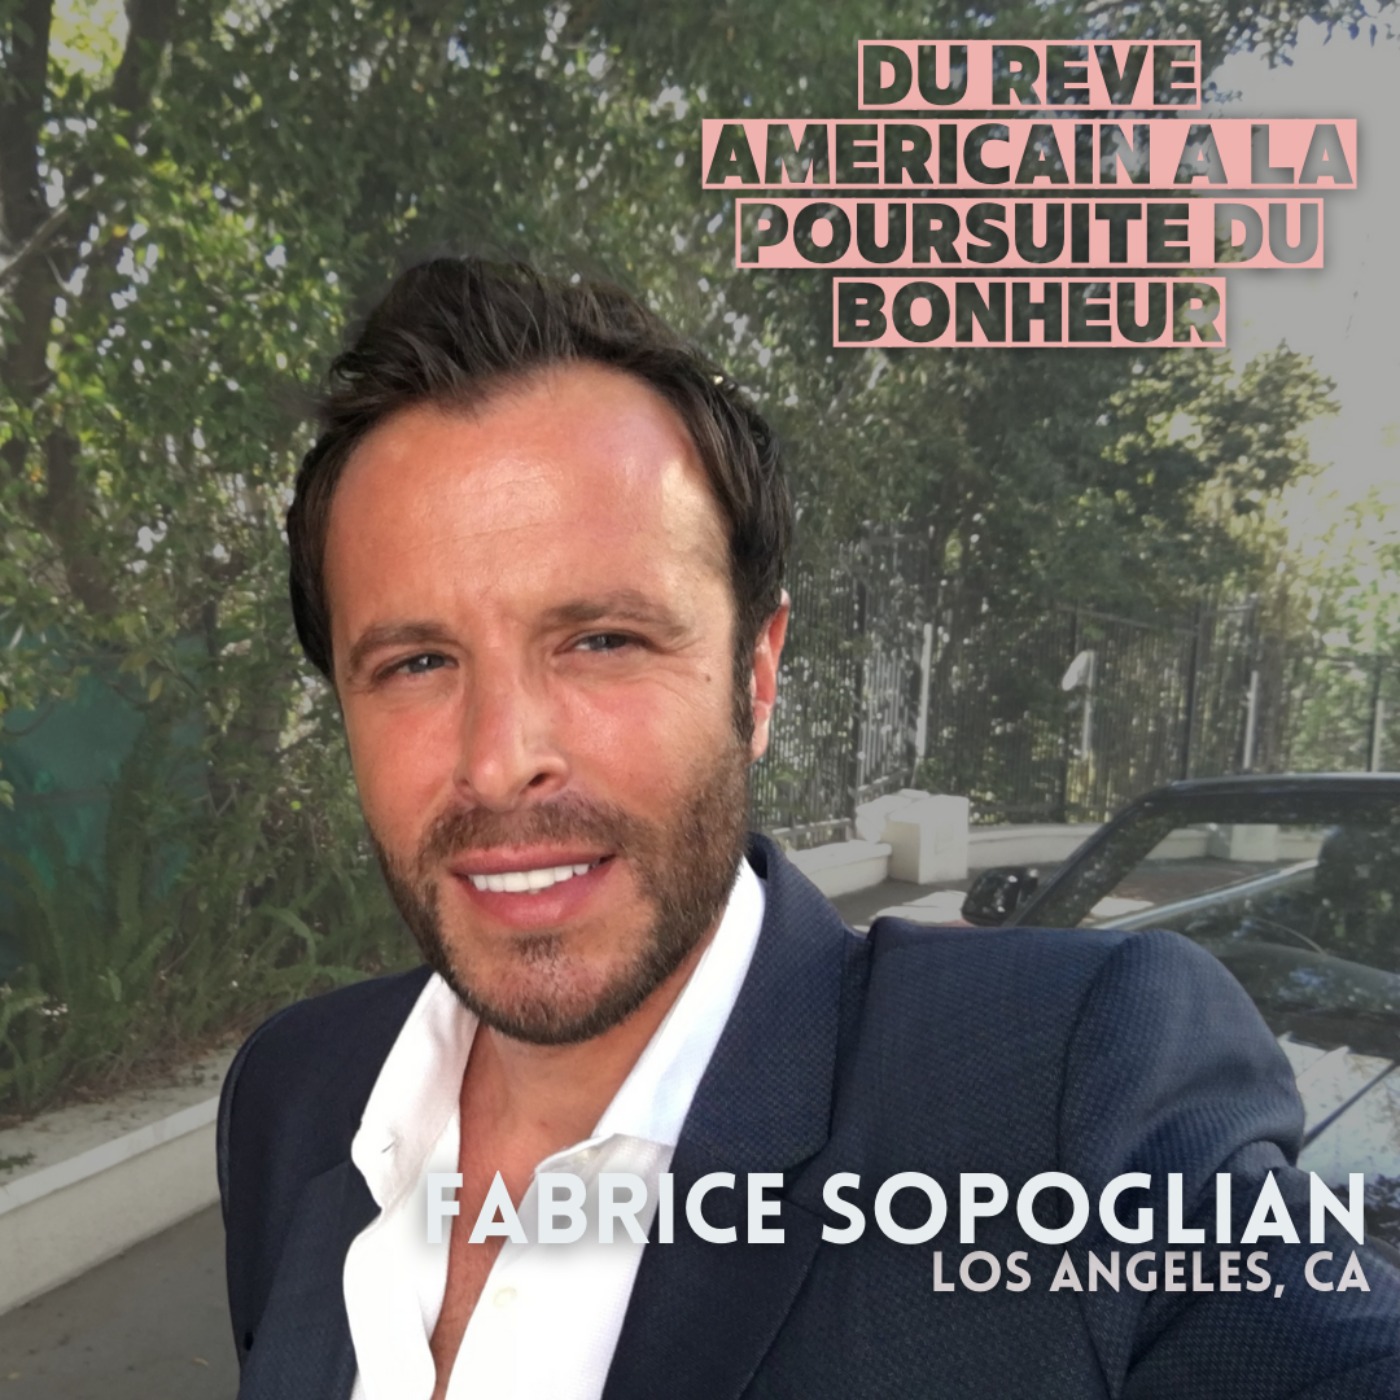 Fabrice Sopoglian (Los Angeles) : ≪le rêve Américain c’est comme un combat en 12 rounds≫